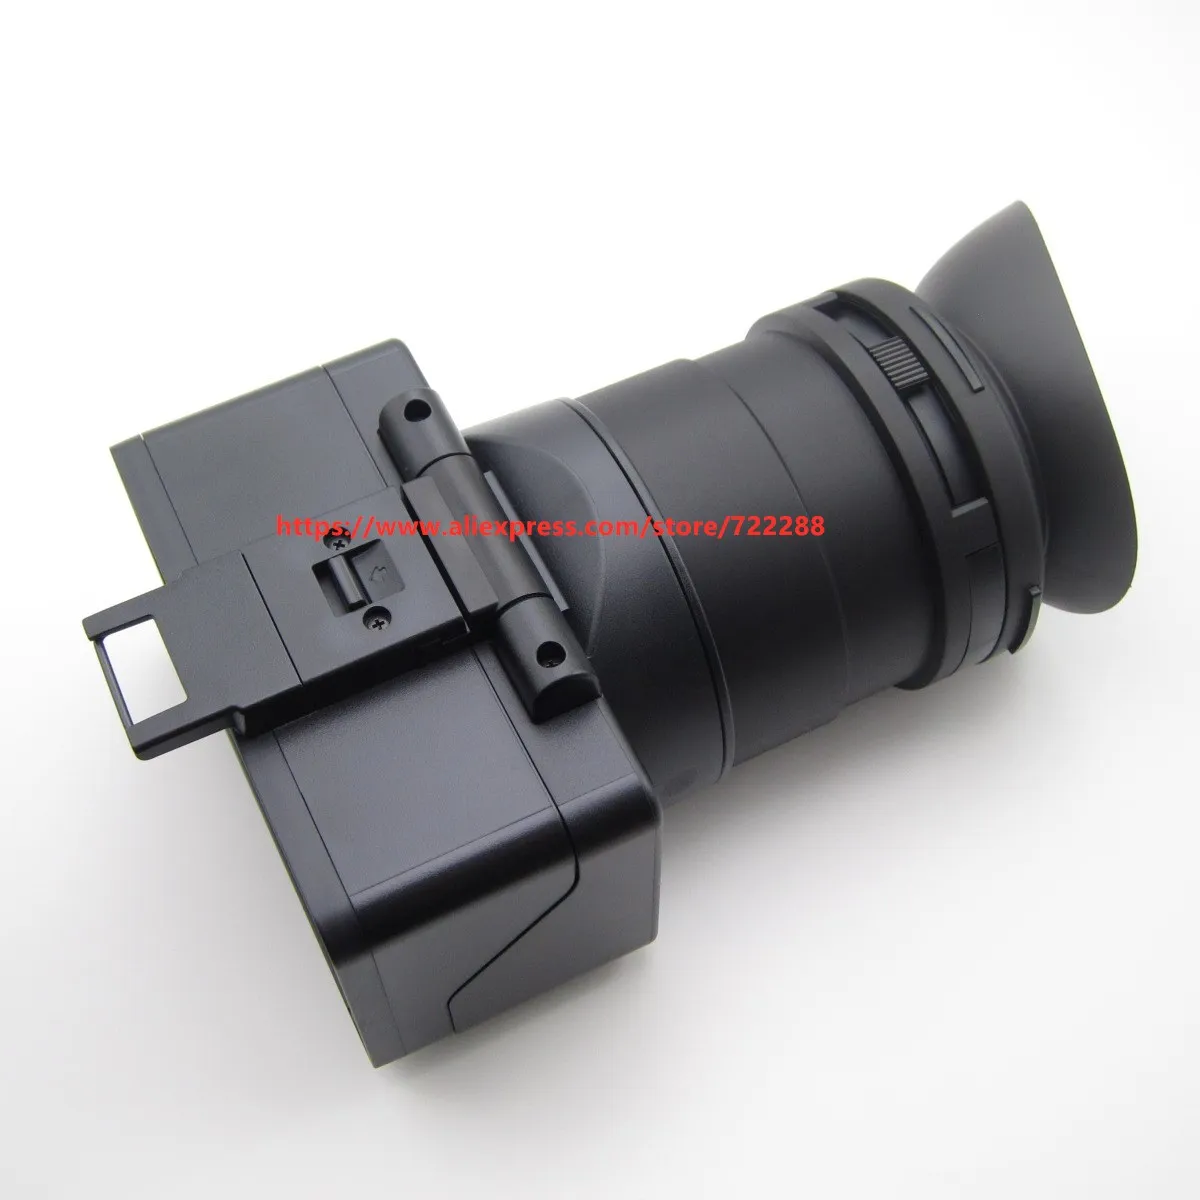 Блок окуляра VF Видоискатель с резиновой проушиной в сборе для Sony PXW-FX9 PXW-FX9V /FX9 A-5012-168- A 1